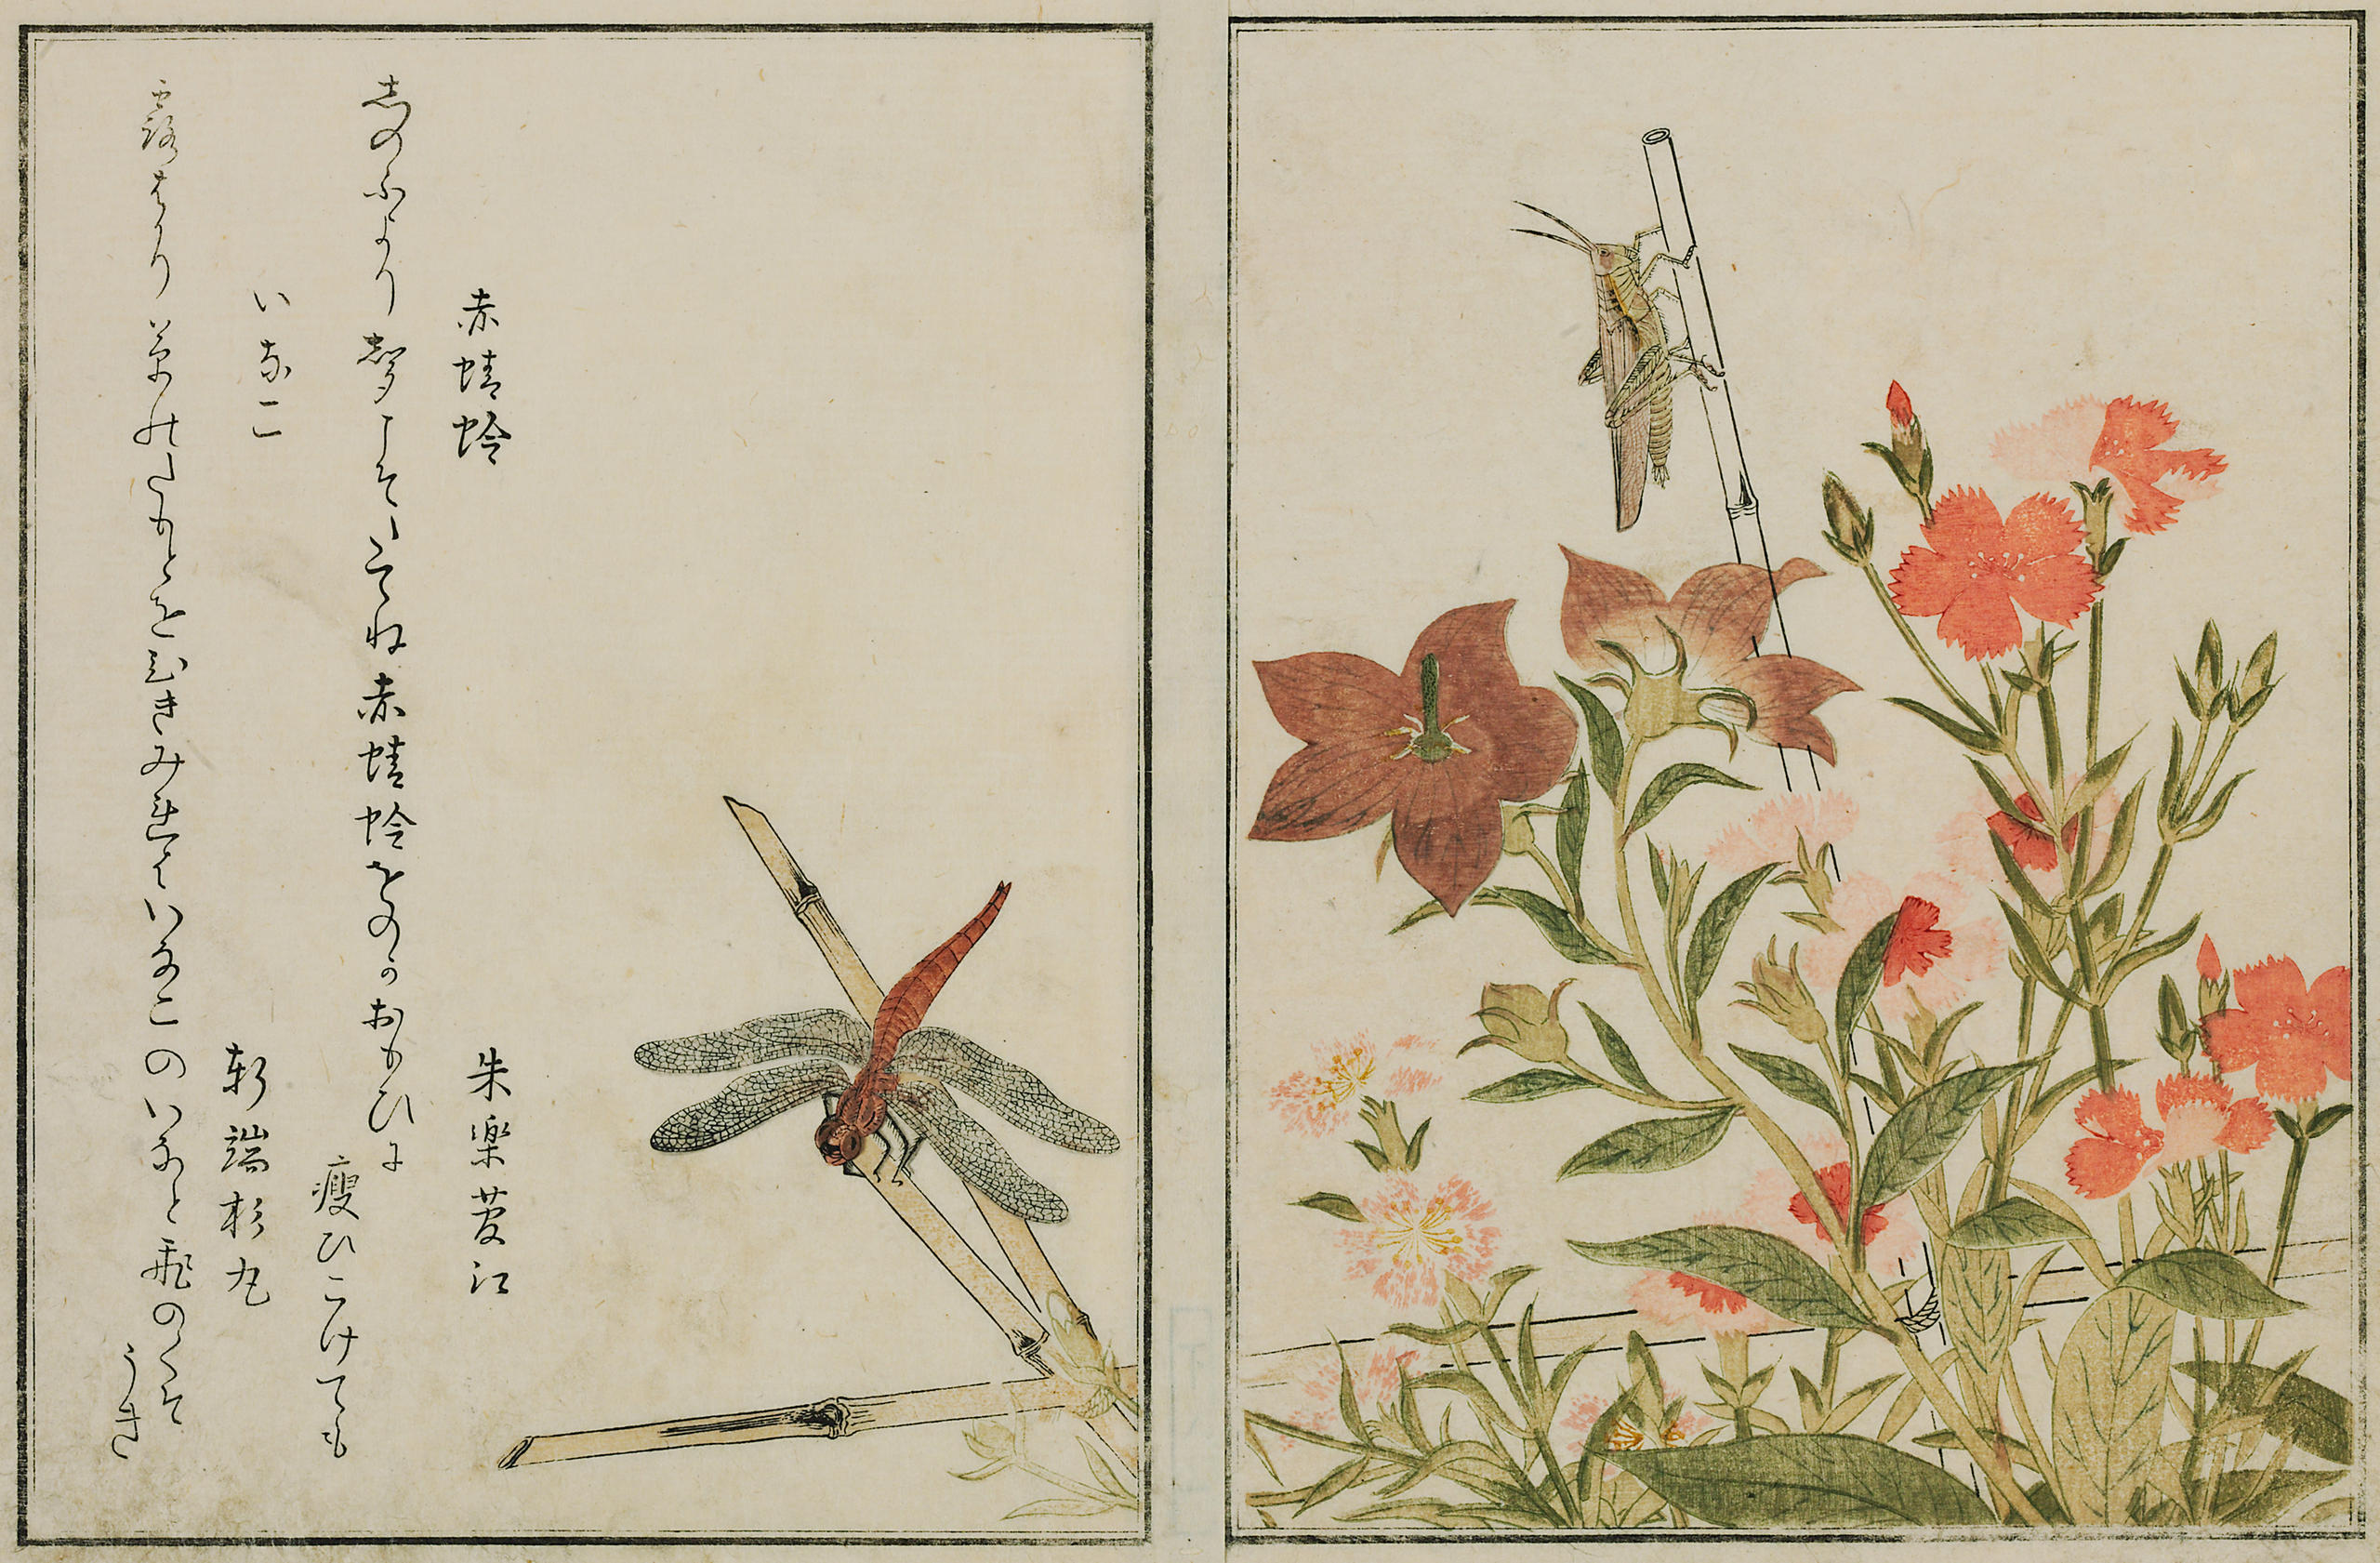 Farbige Zeichnung Rote Libelle und Heuschrecke auf chinesischer Glockenblume und Prachtnelke.